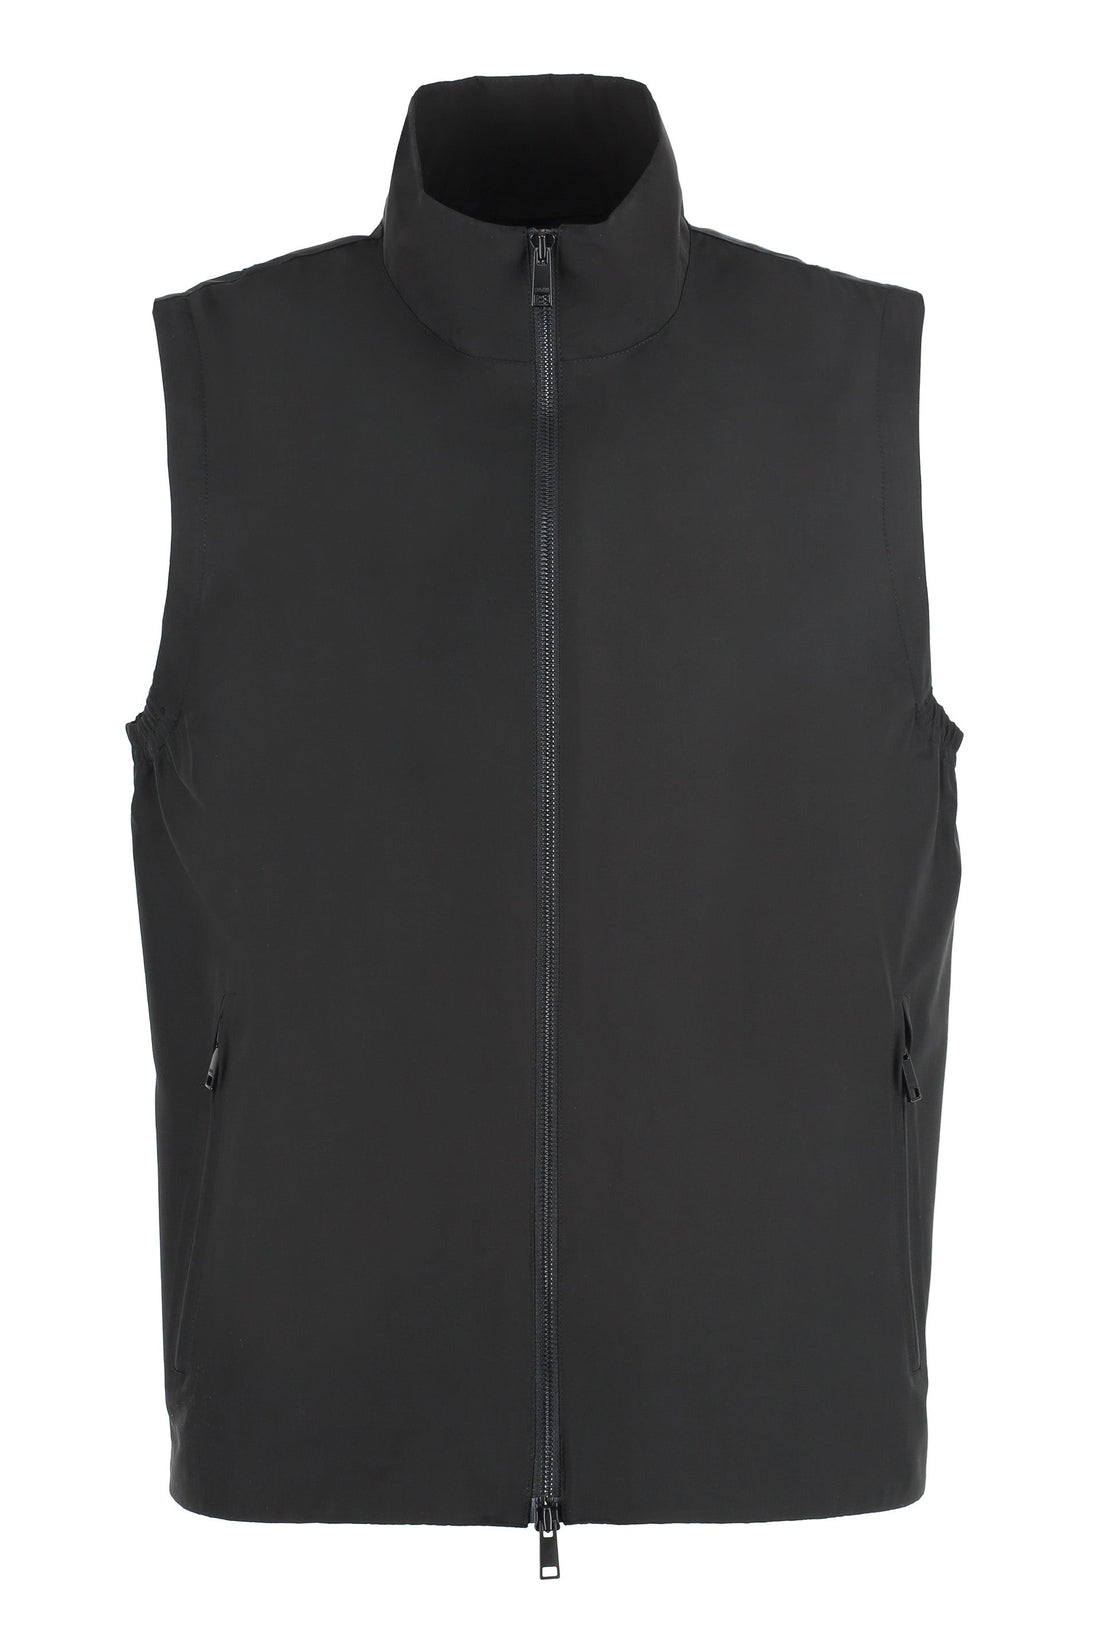 Zegna-OUTLET-SALE-Technical fabric vest-ARCHIVIST